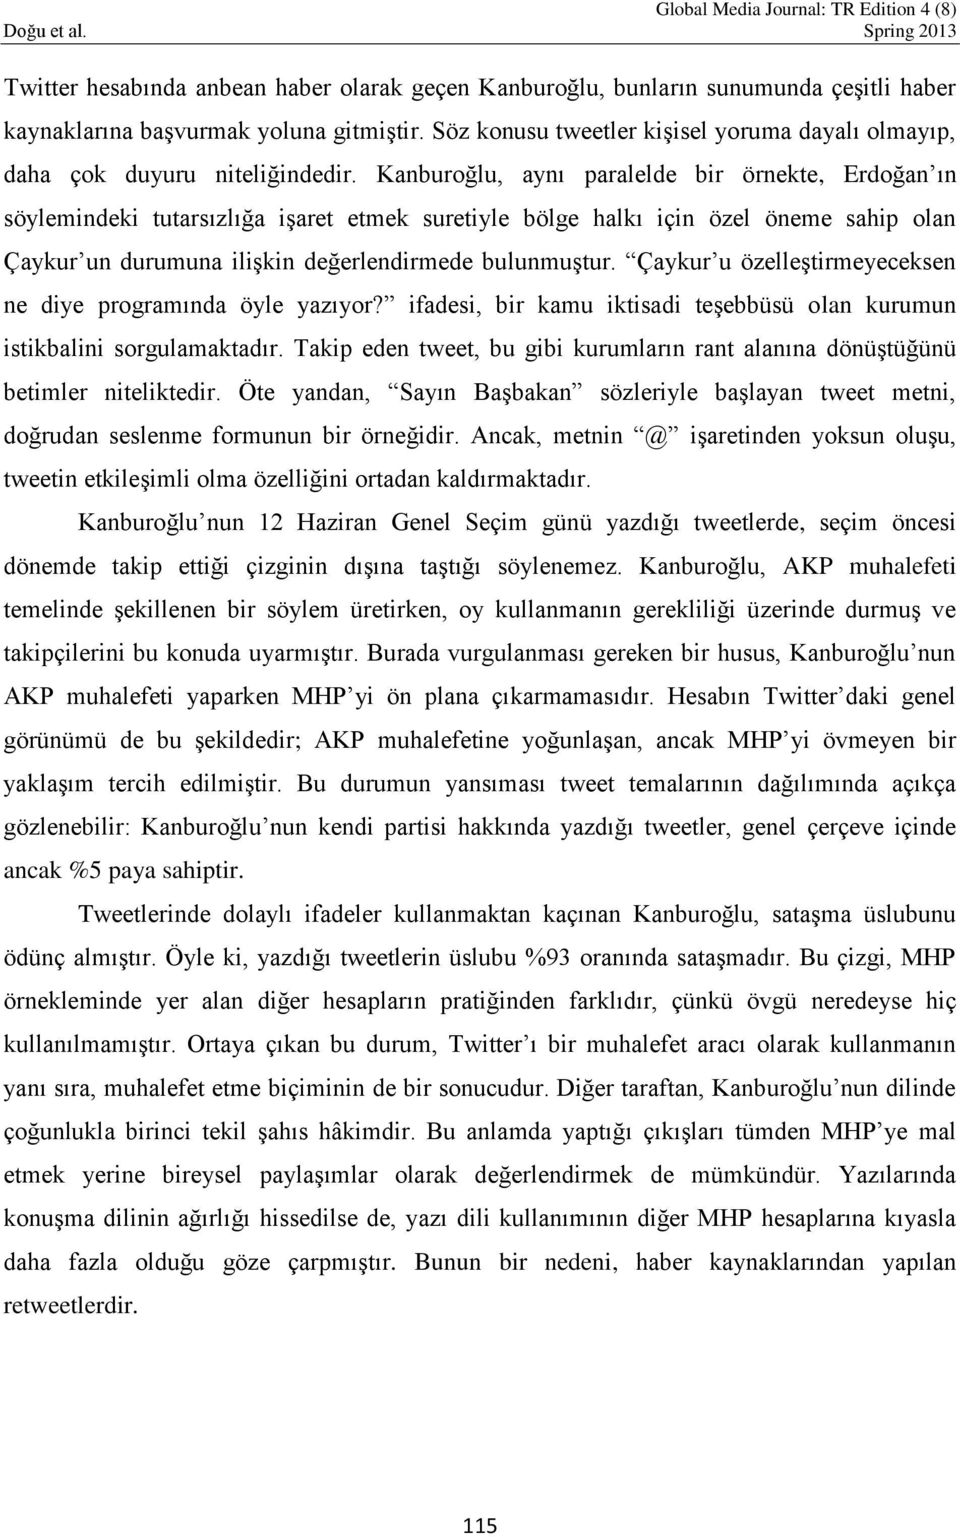 Kanburoğlu, aynı paralelde bir örnekte, Erdoğan ın söylemindeki tutarsızlığa işaret etmek suretiyle bölge halkı için özel öneme sahip olan Çaykur un durumuna ilişkin değerlendirmede bulunmuştur.